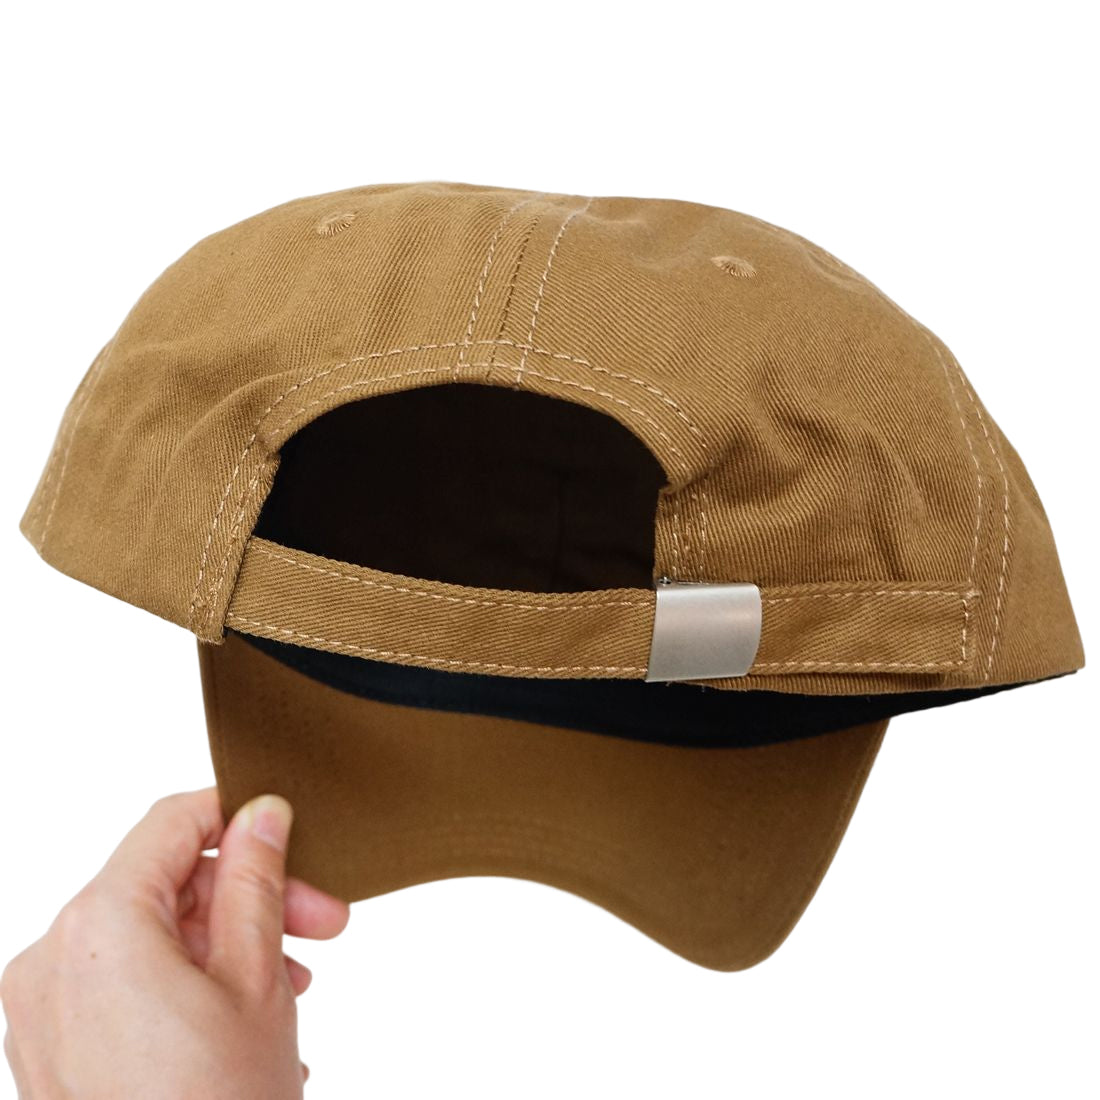 帽子 キャップ CAP メンズ レディース ロゴ 刺繍 ベースボールキャップ コットン 春 夏 秋 冬